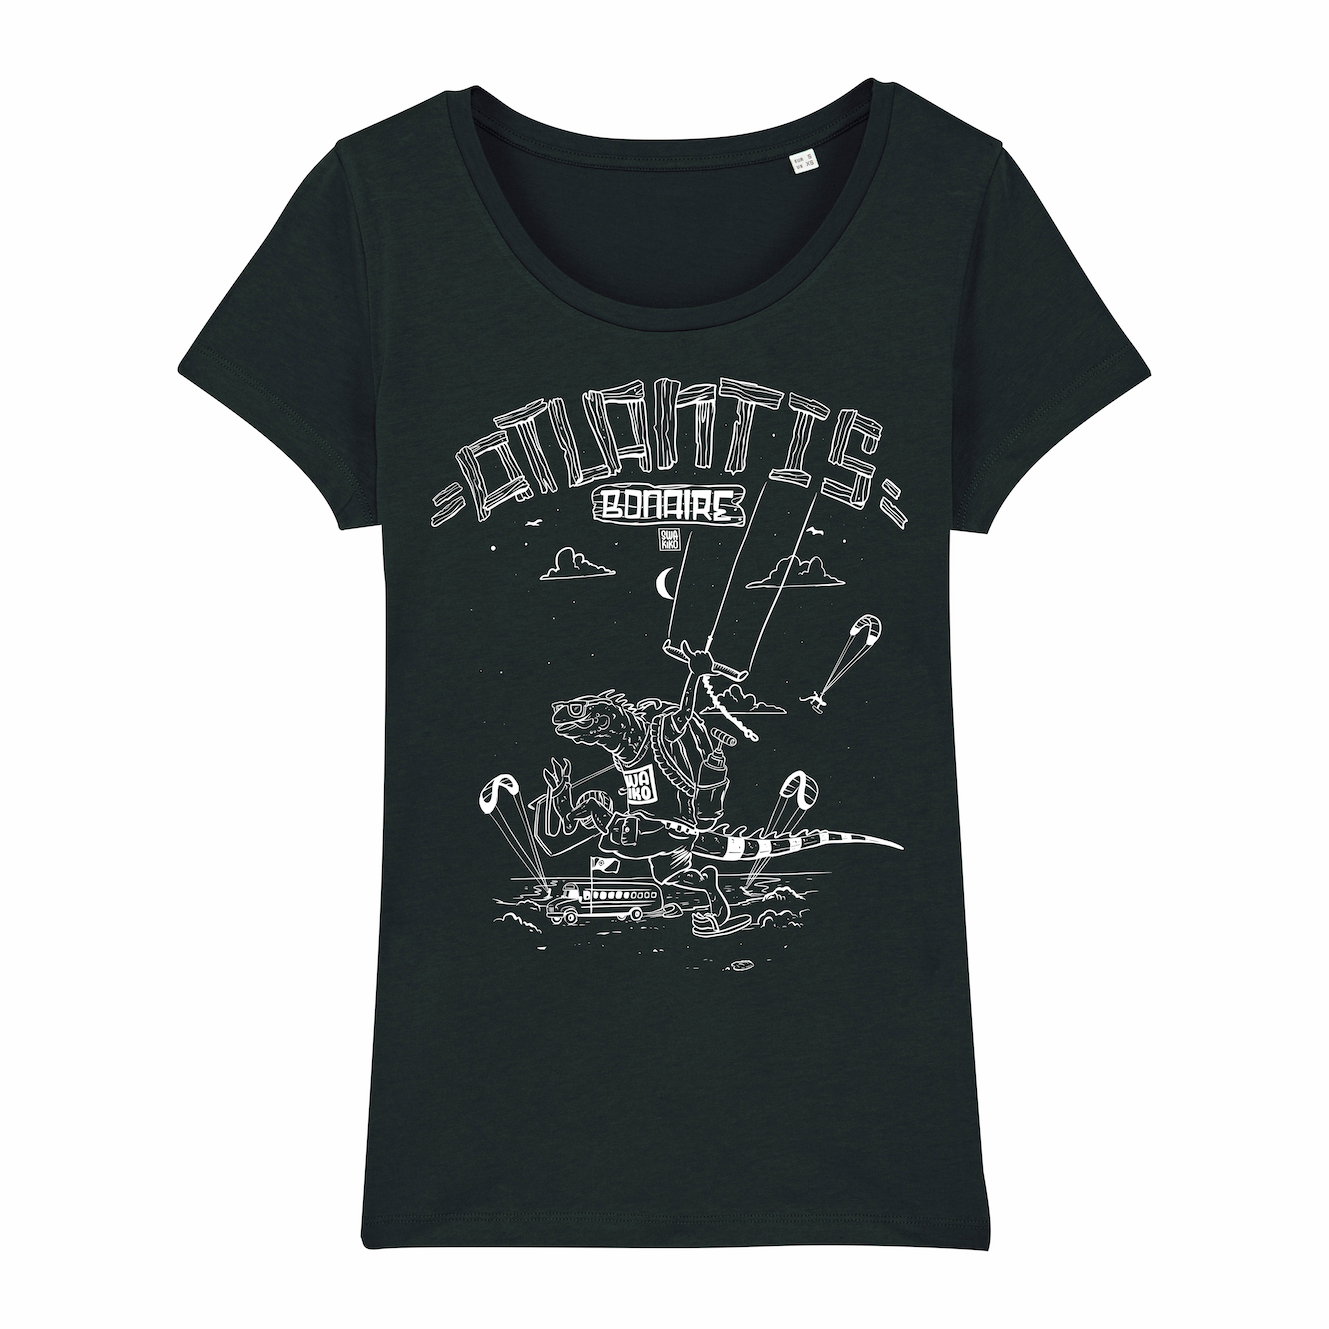 Atlantis Bonaire Kite T-shirt women black